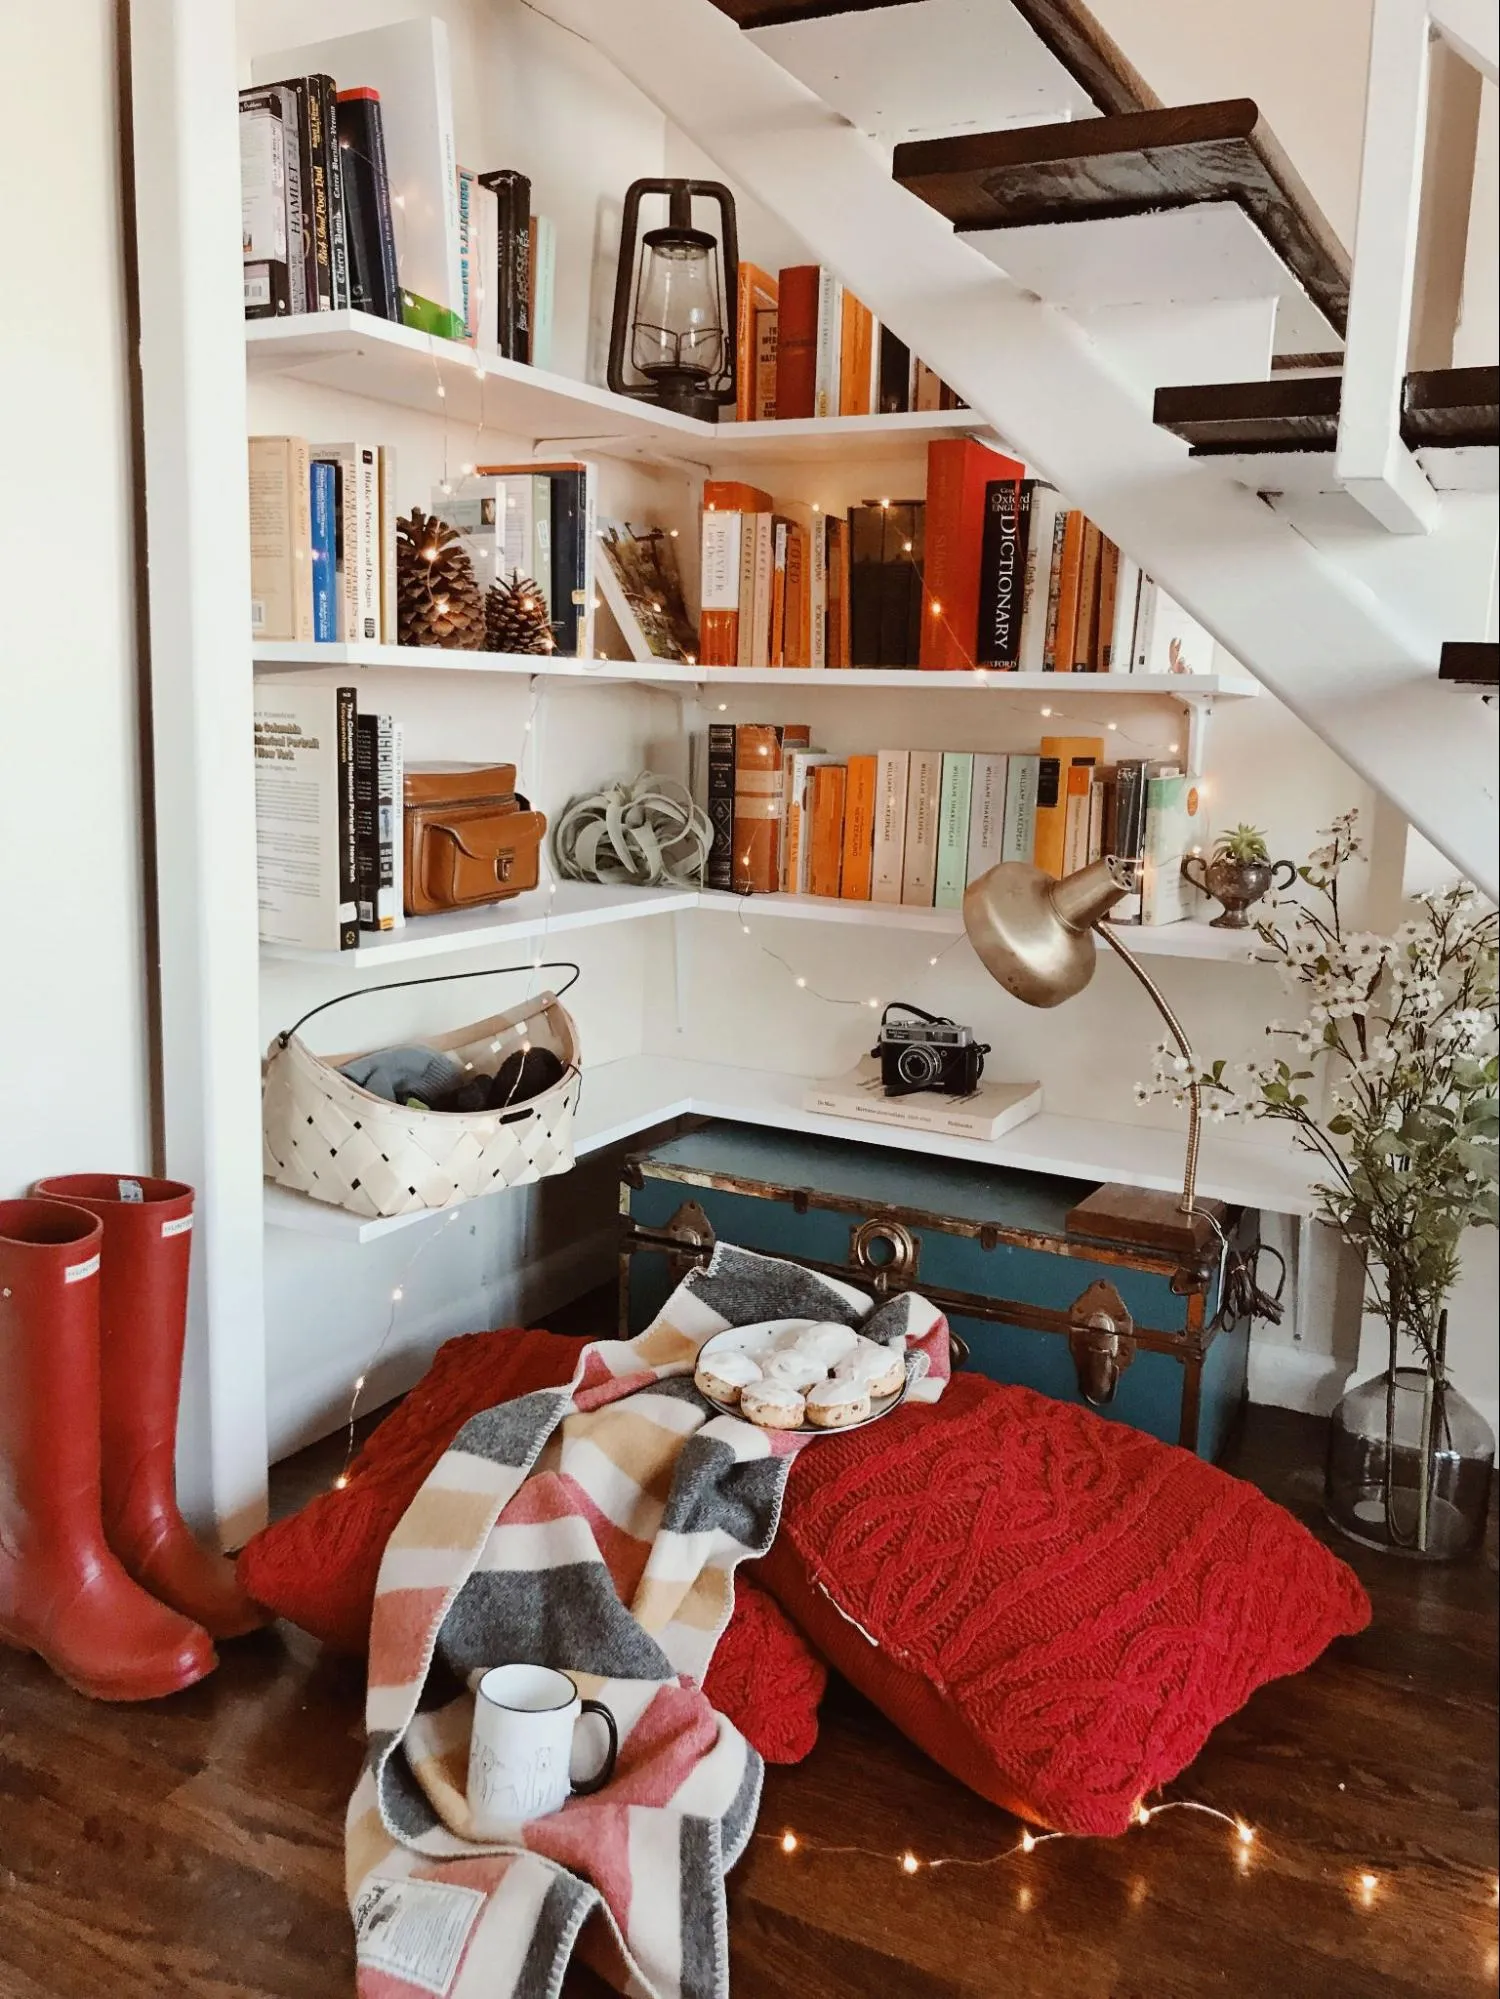 Thiết kế gầm cầu thang làm tủ sách và nơi đọc sách thư giãn